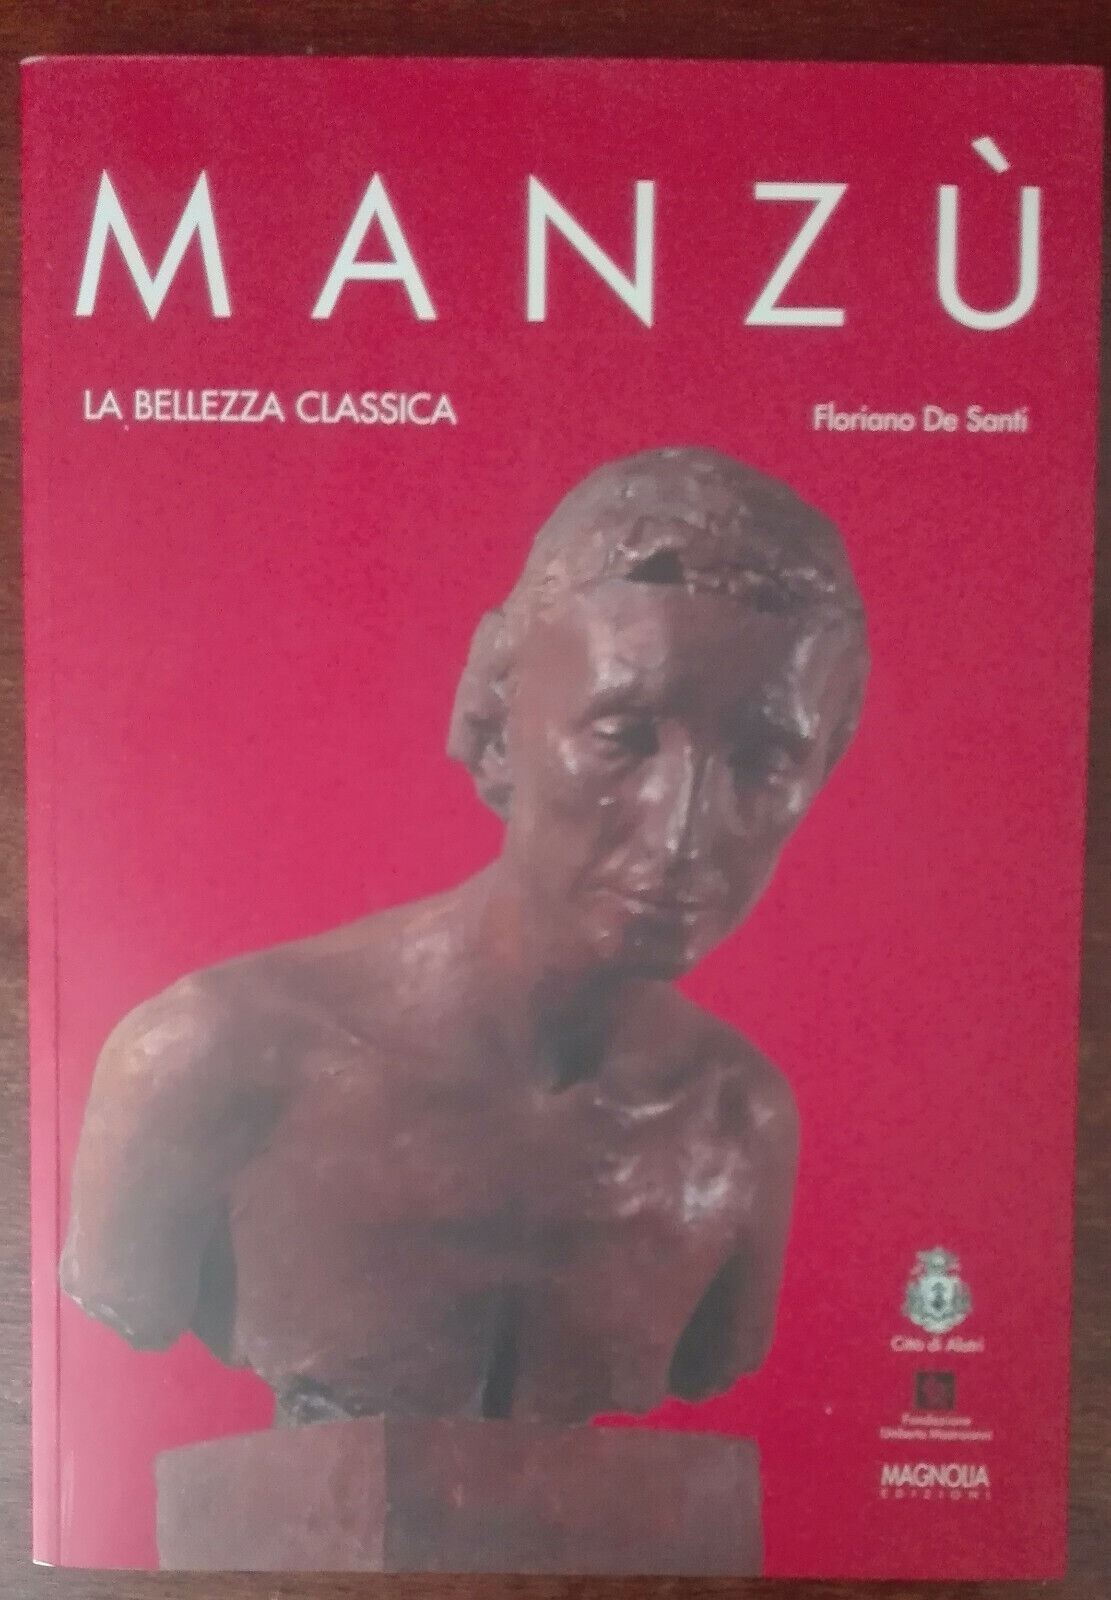 Manz? la bellezza classica - Floriano De Santi - Magnolia, 2005 - A